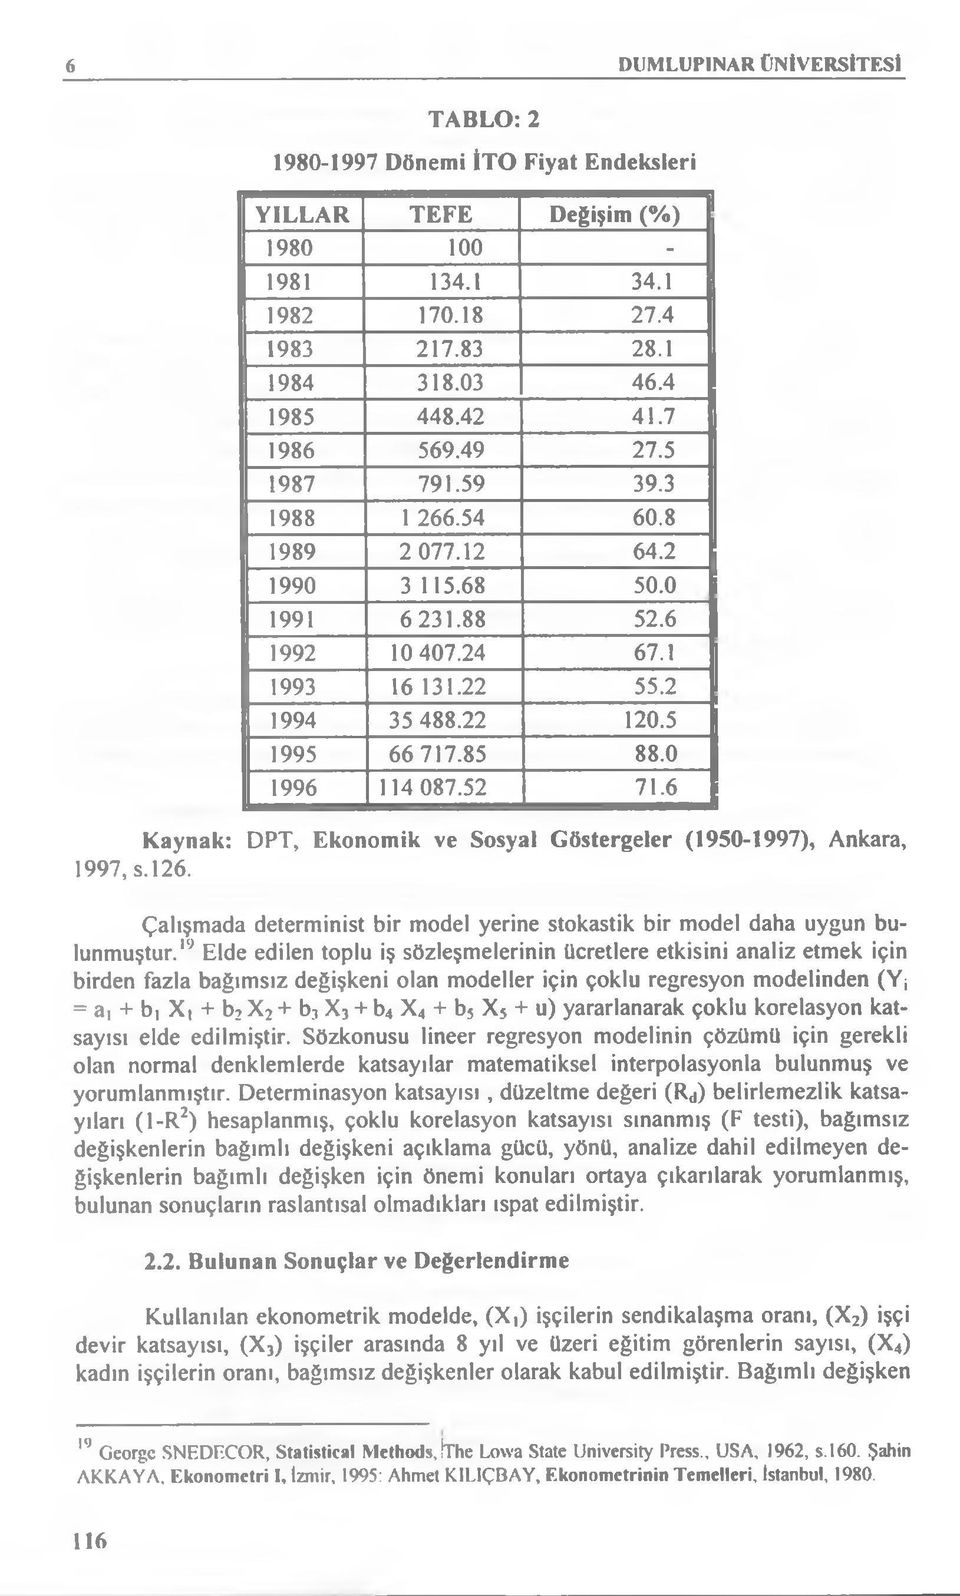 52 71.6 Kaynak: DPT, Ekonomik ve Sosyal Göstergeler (1950-1997), Ankara, 1997, s. 126. Çalışmada determinist bir model yerine stokastik bir model daha uygun bulunmuştur.